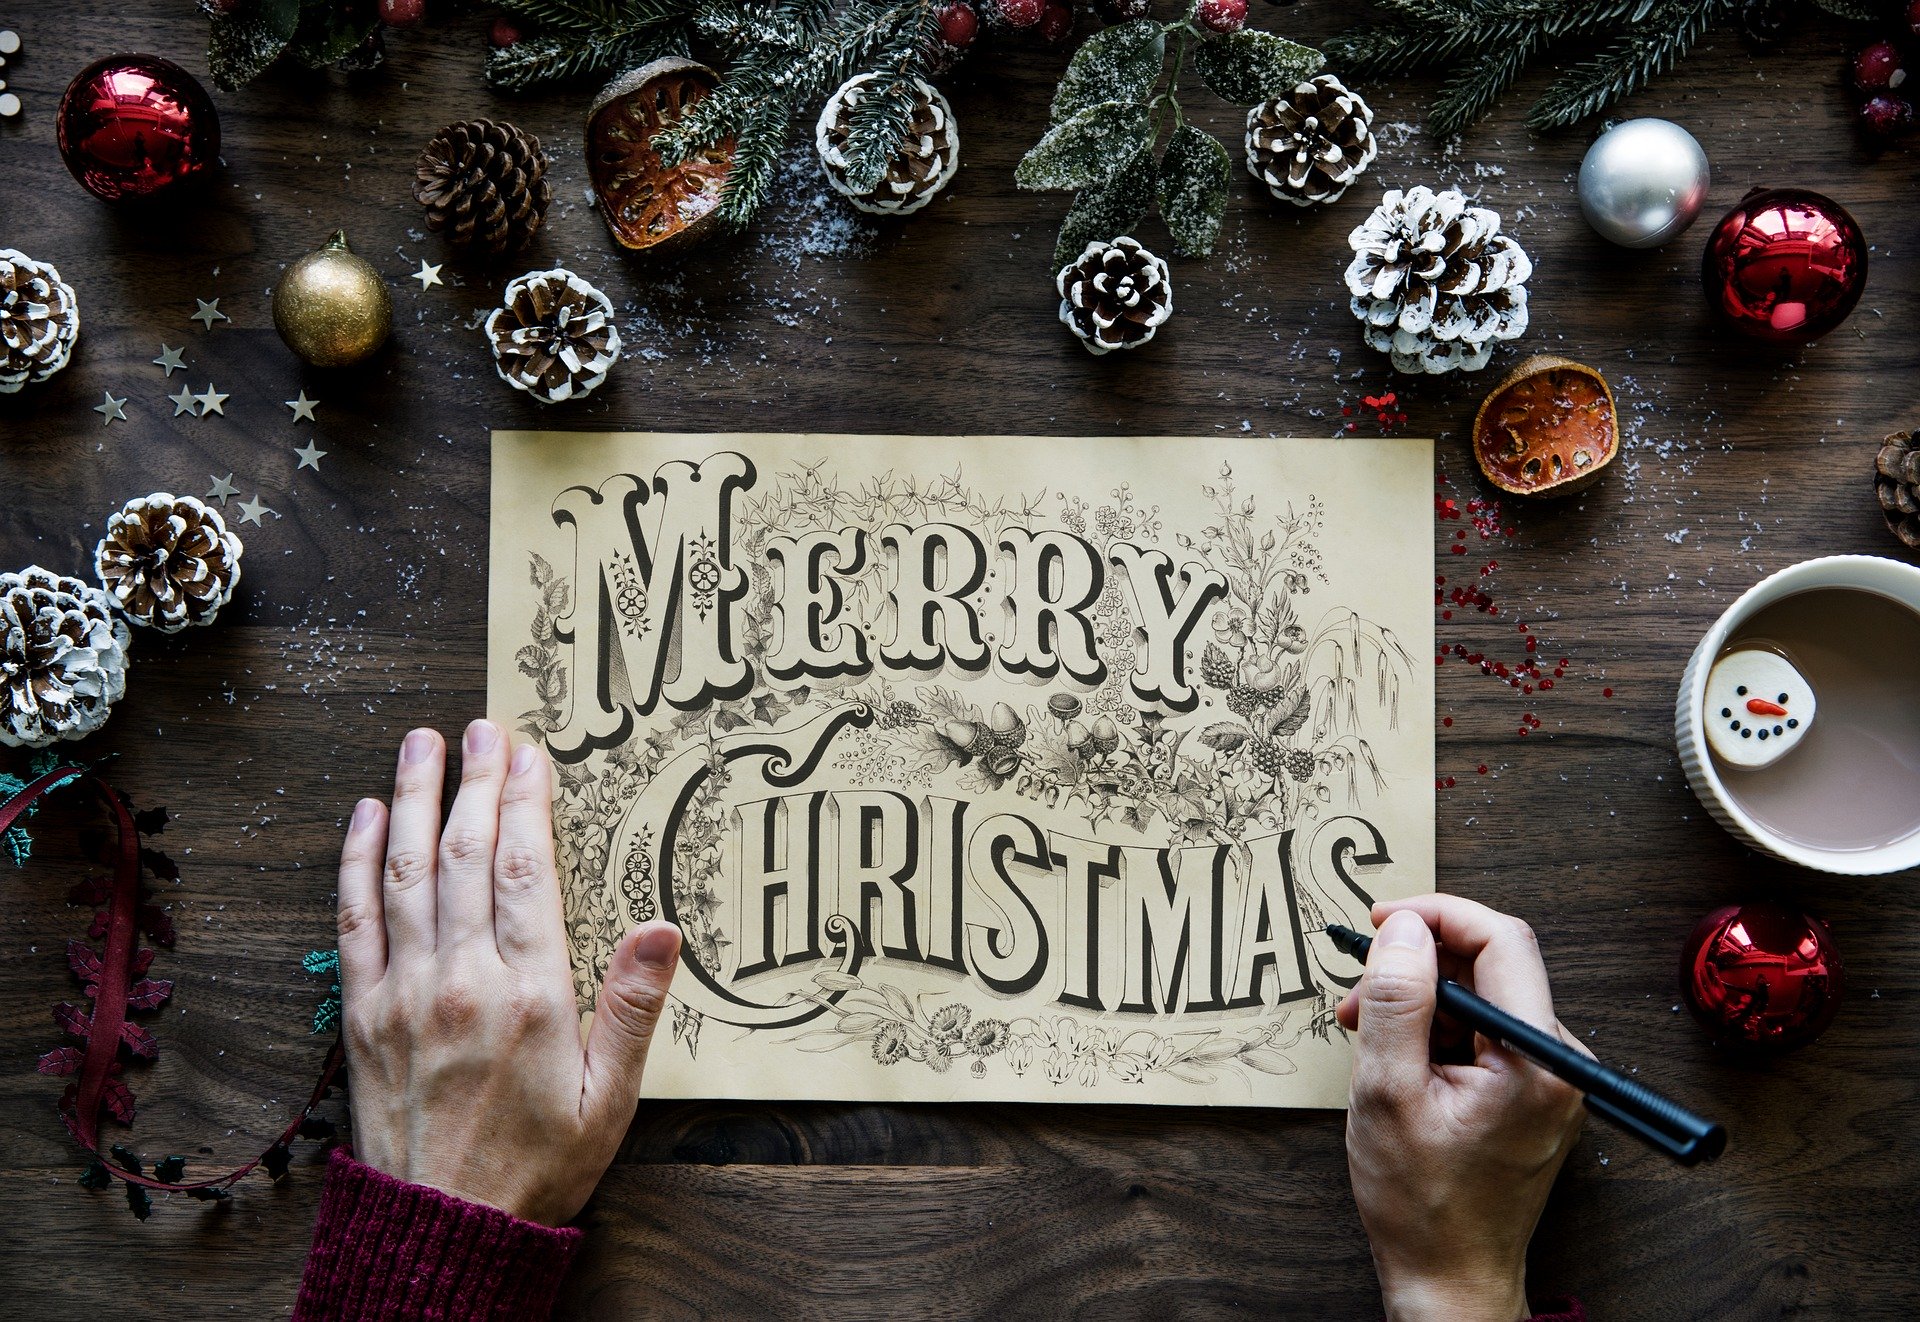 Merry Christmas (c) www.pixabay.com